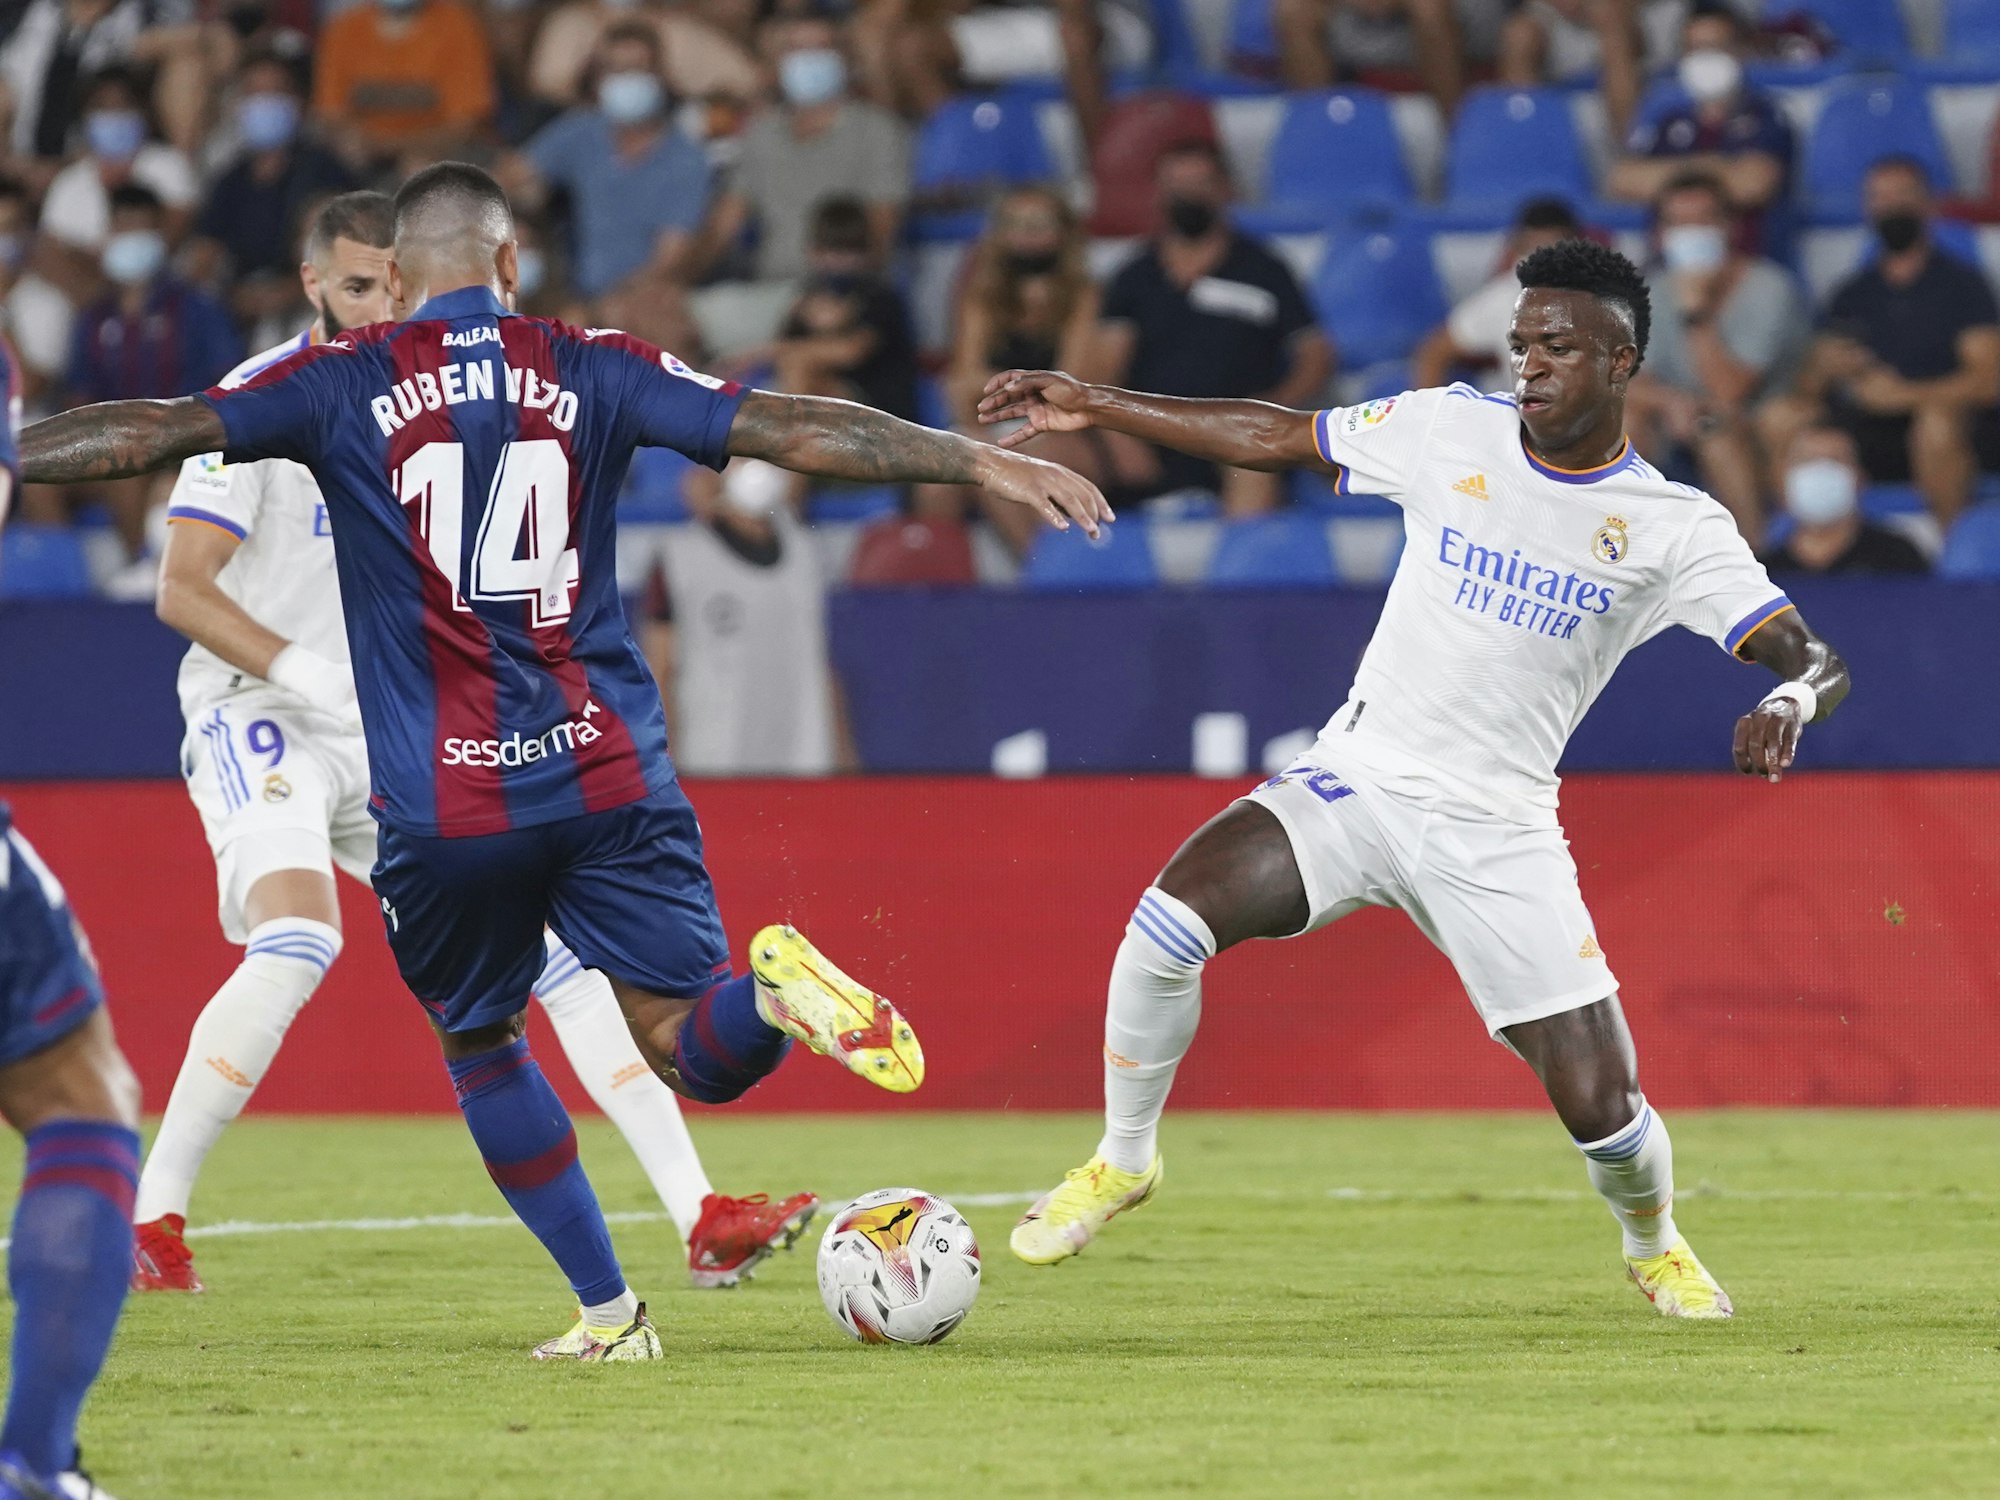 Ruben Vezo von Levante wird von Vinicius Junior von Real Madrid angegriffen.